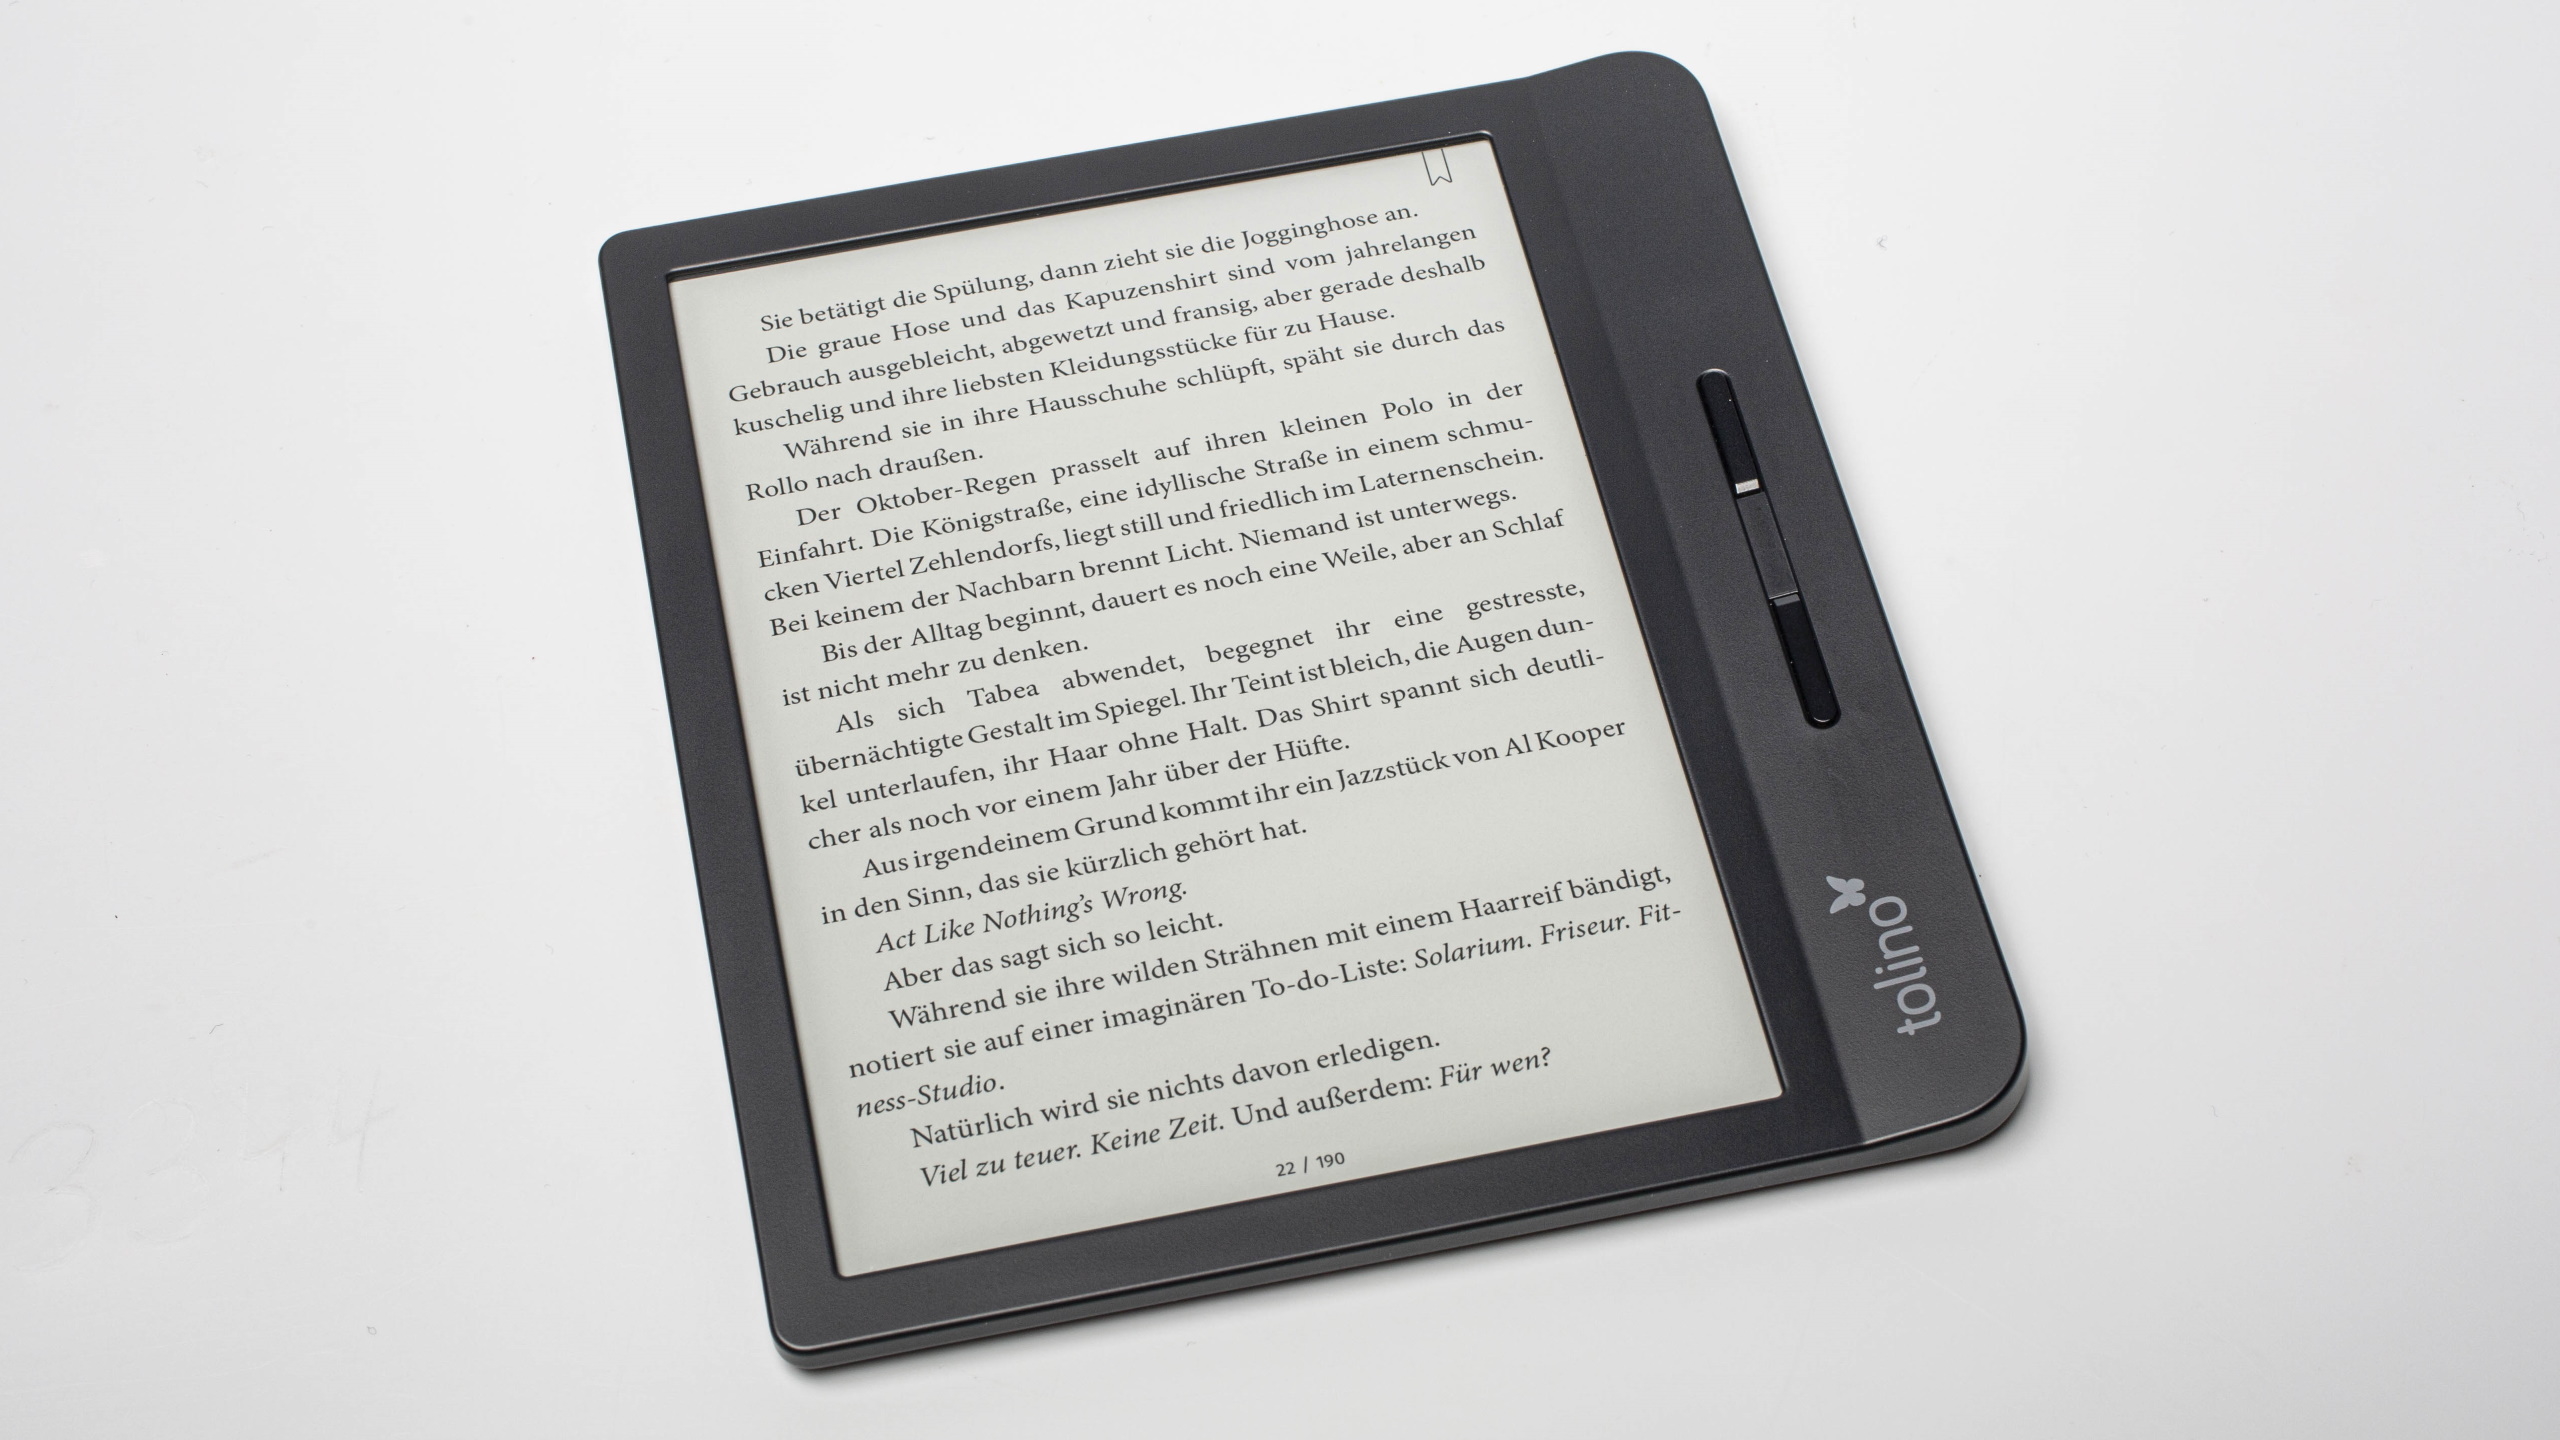 7-Zoll-Display und Blättertasten: E-Book-Reader Tolino Vision 5 im neuen  Format | heise online